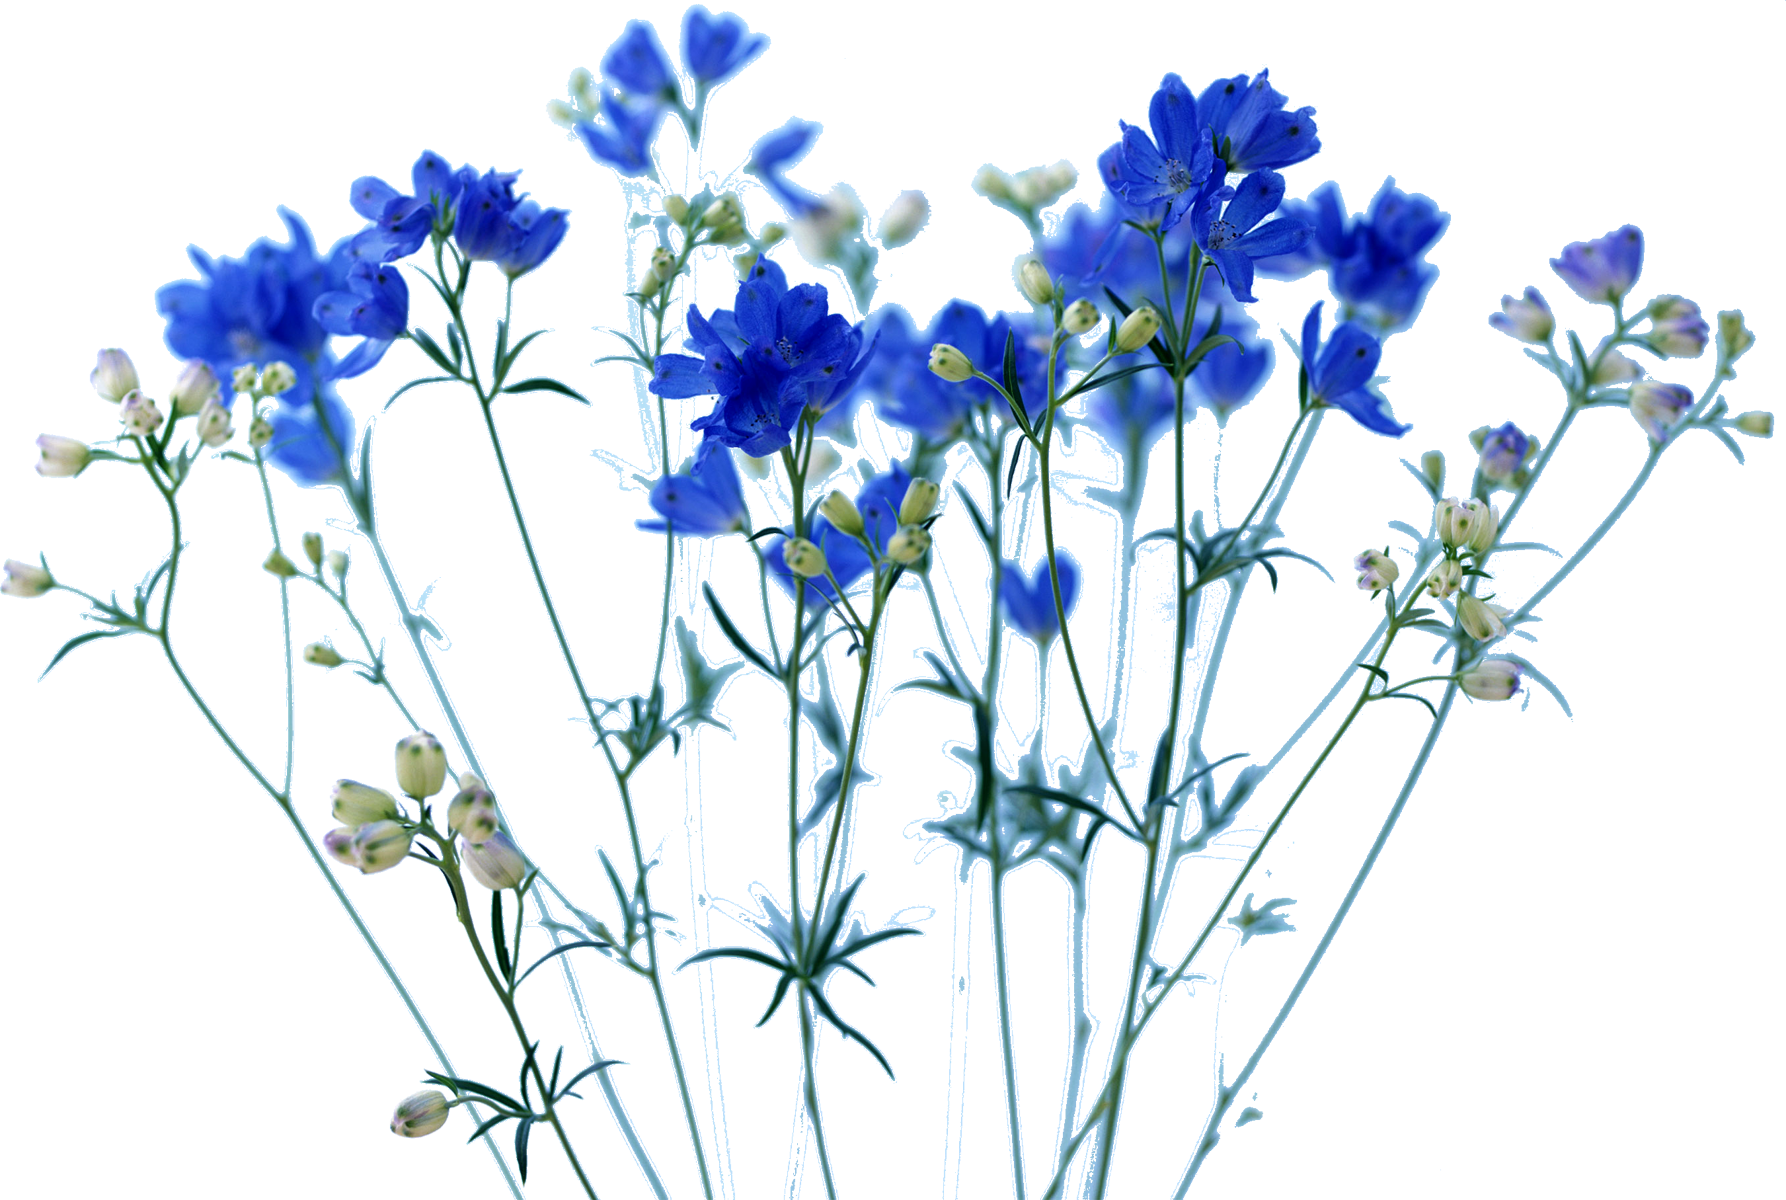 青い花の写真 フリー素材 No 445 青 デルフィニウム